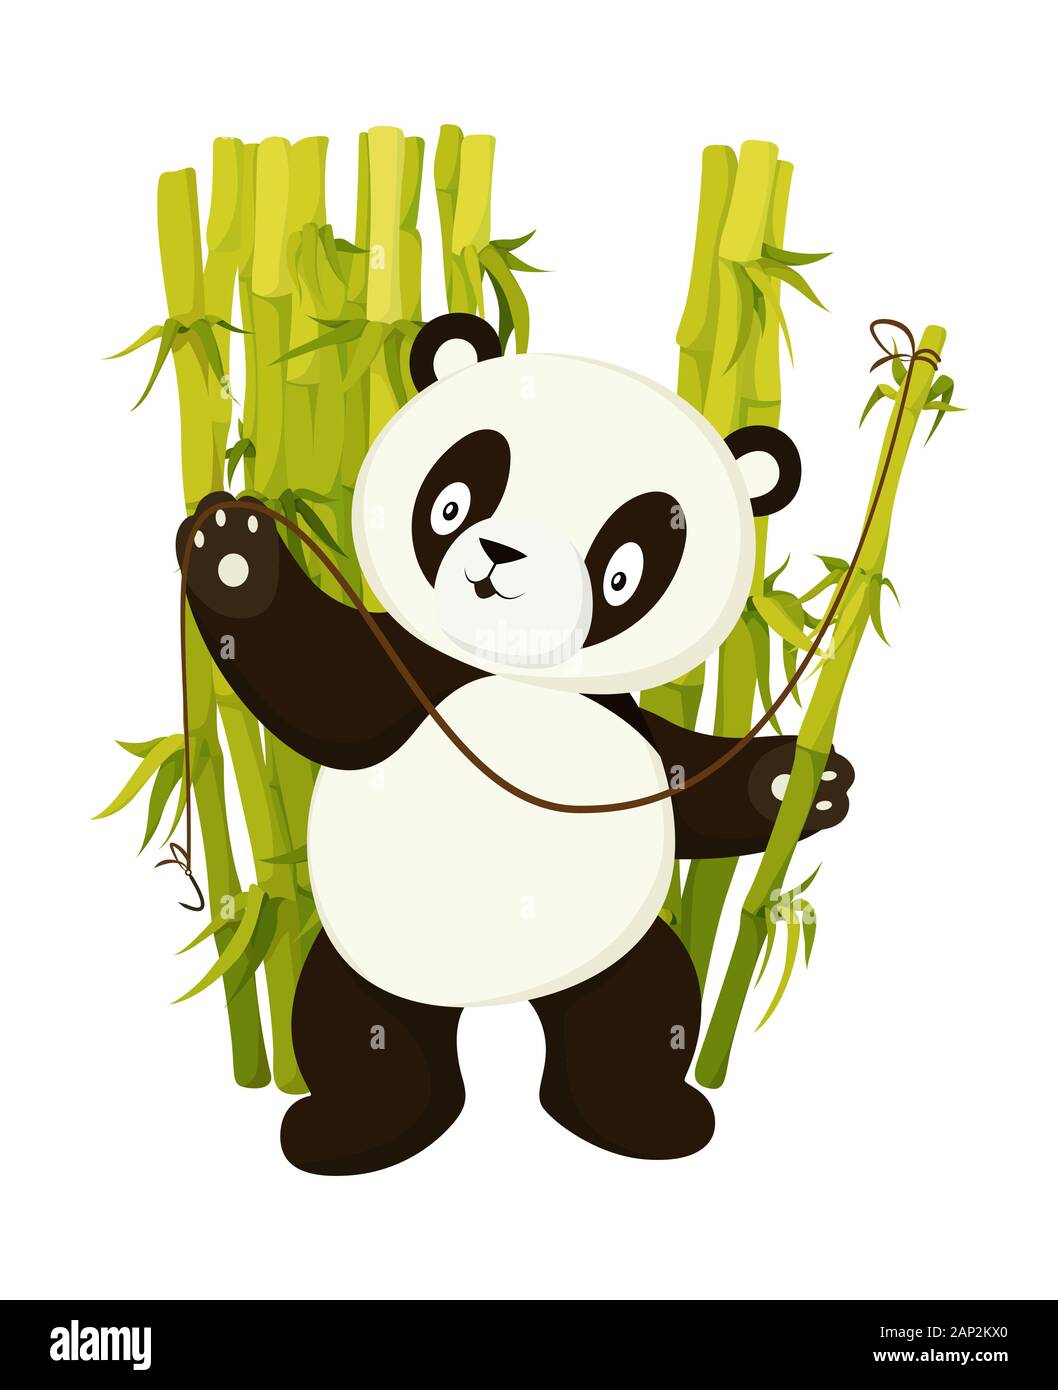 Lindo oso panda pesca con tallo de bambú plana ilustración aislada de vectores Ilustración del Vector